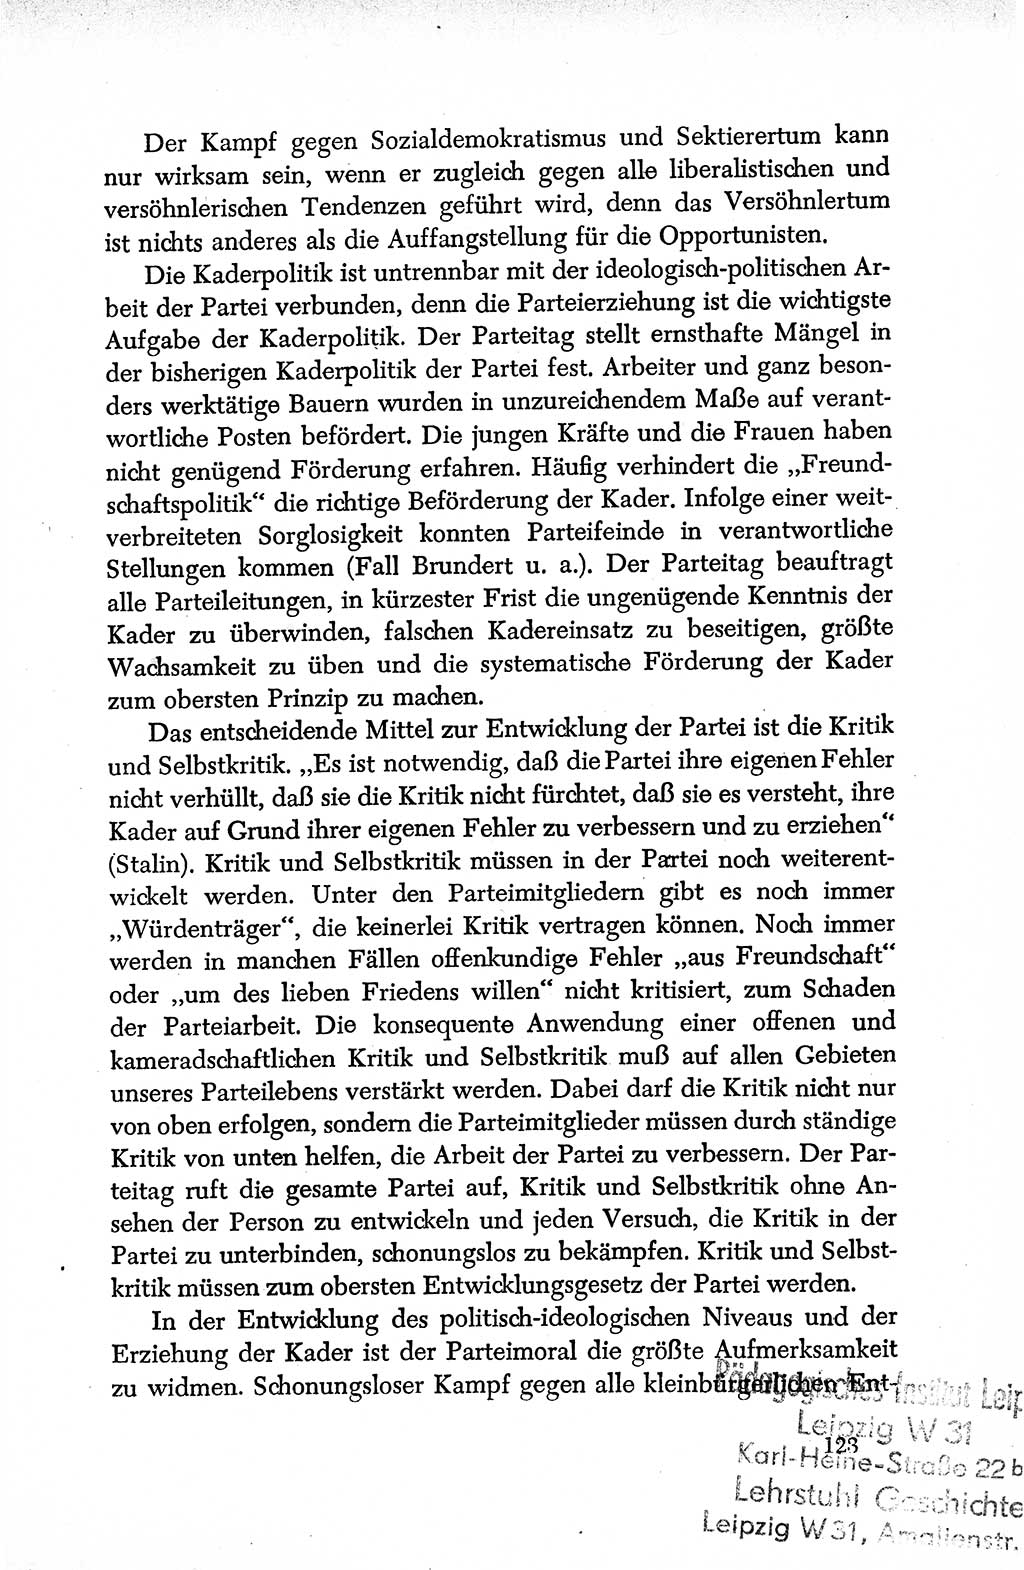 Dokumente der Sozialistischen Einheitspartei Deutschlands (SED) [Deutsche Demokratische Republik (DDR)] 1950-1952, Seite 123 (Dok. SED DDR 1950-1952, S. 123)